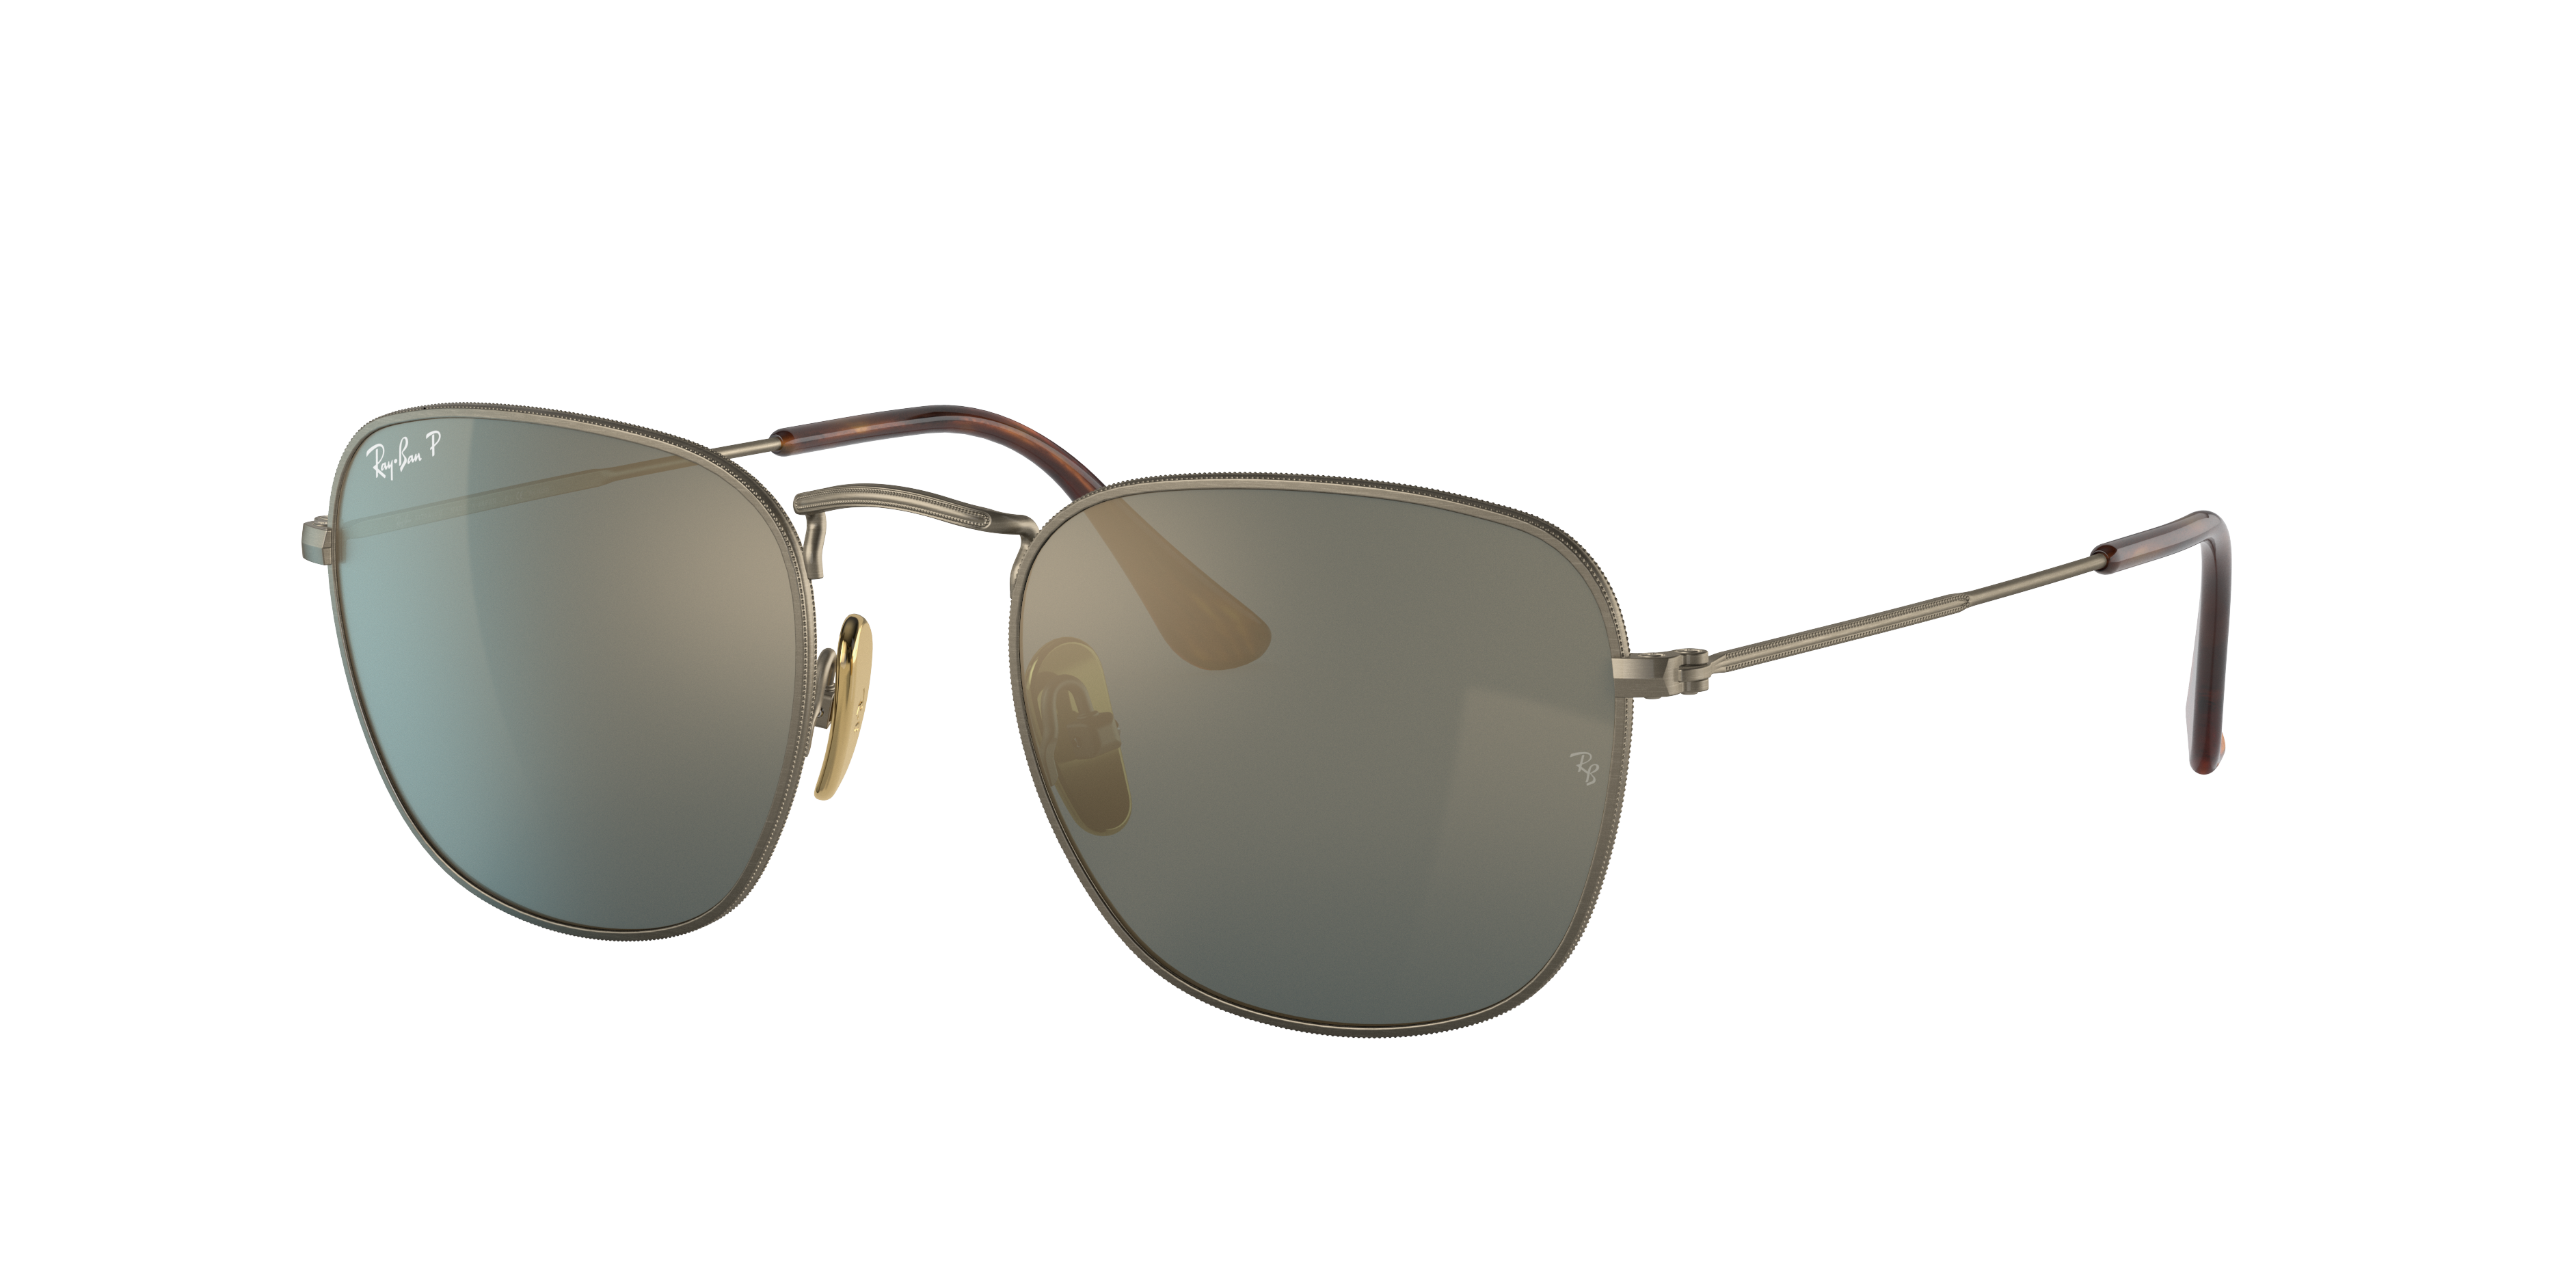 Oculos de Sol Ray Ban Sunglasses, coleção completa com milhares de modelos de óculos de sol de diferentes estilos para você escolher.